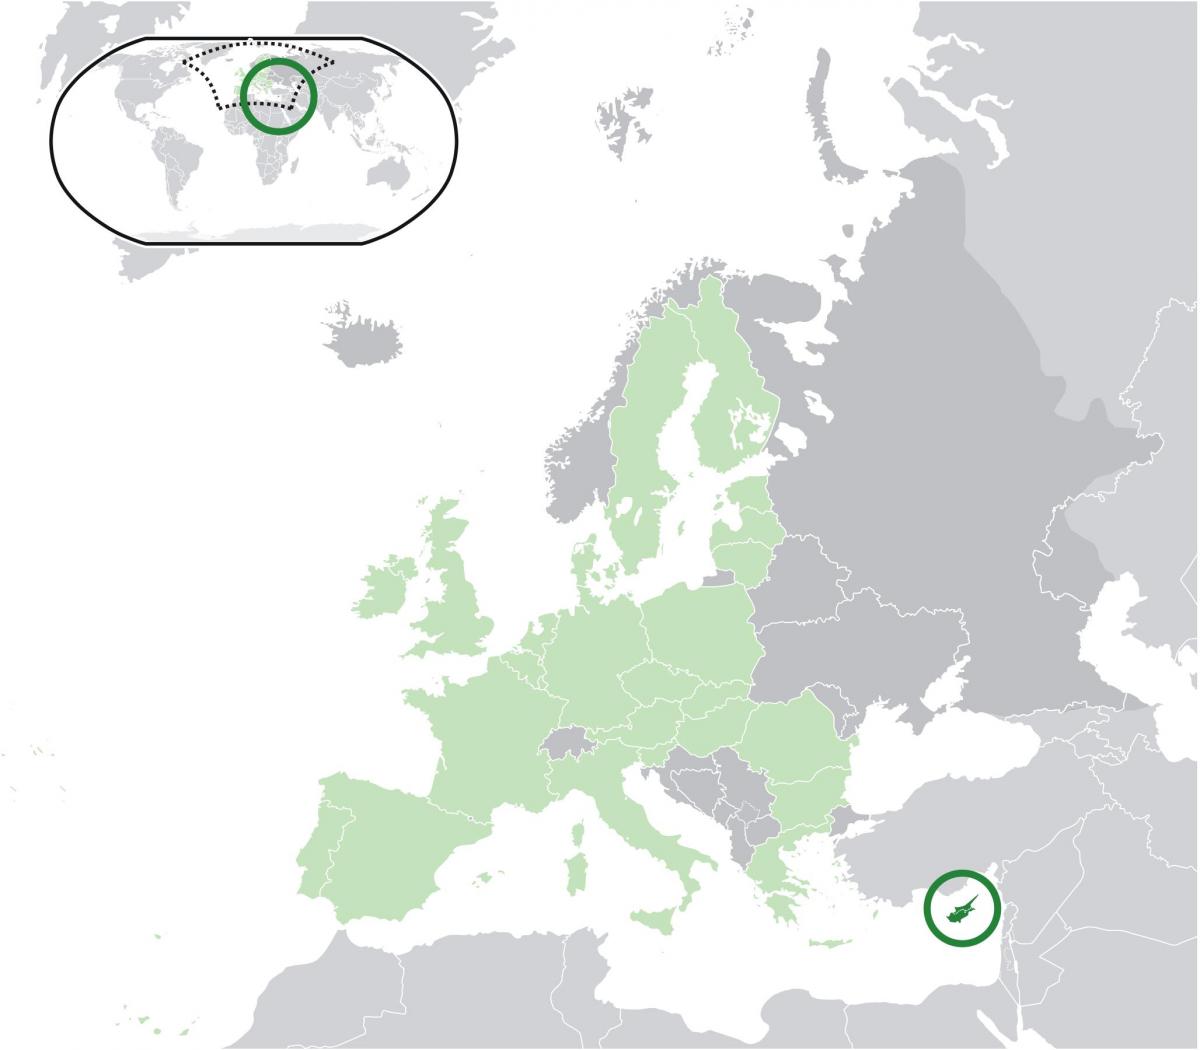 خريطة أوروبا توضح قبرص